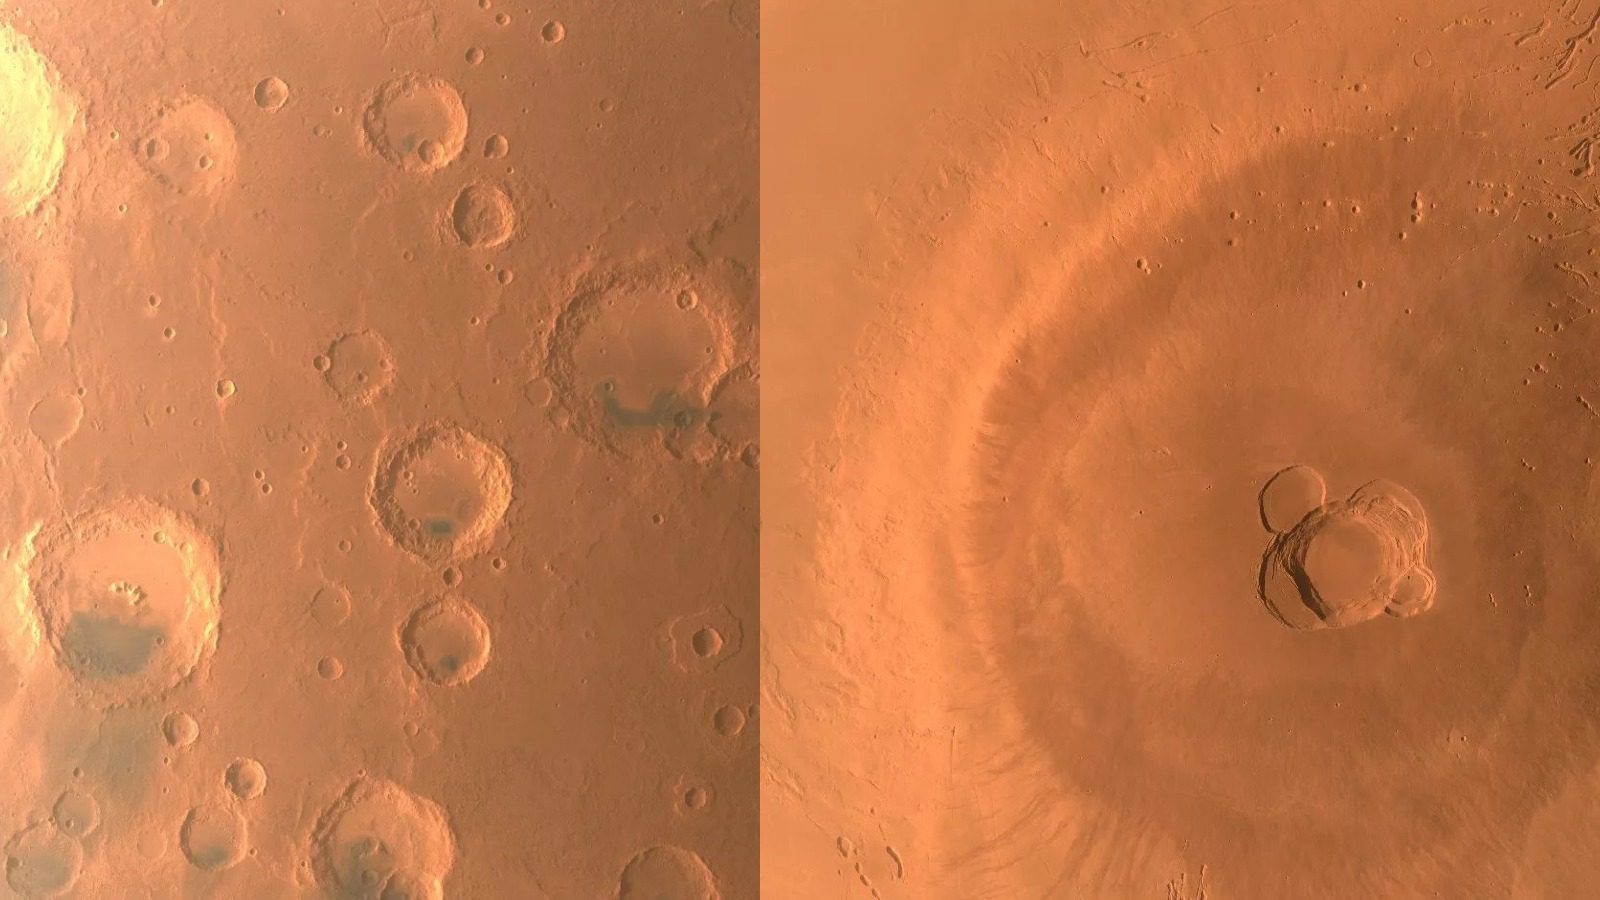 Спутник «Тяньвэнь-1» сделал снимок Марса в знак завершения научно-исследовательской миссии...